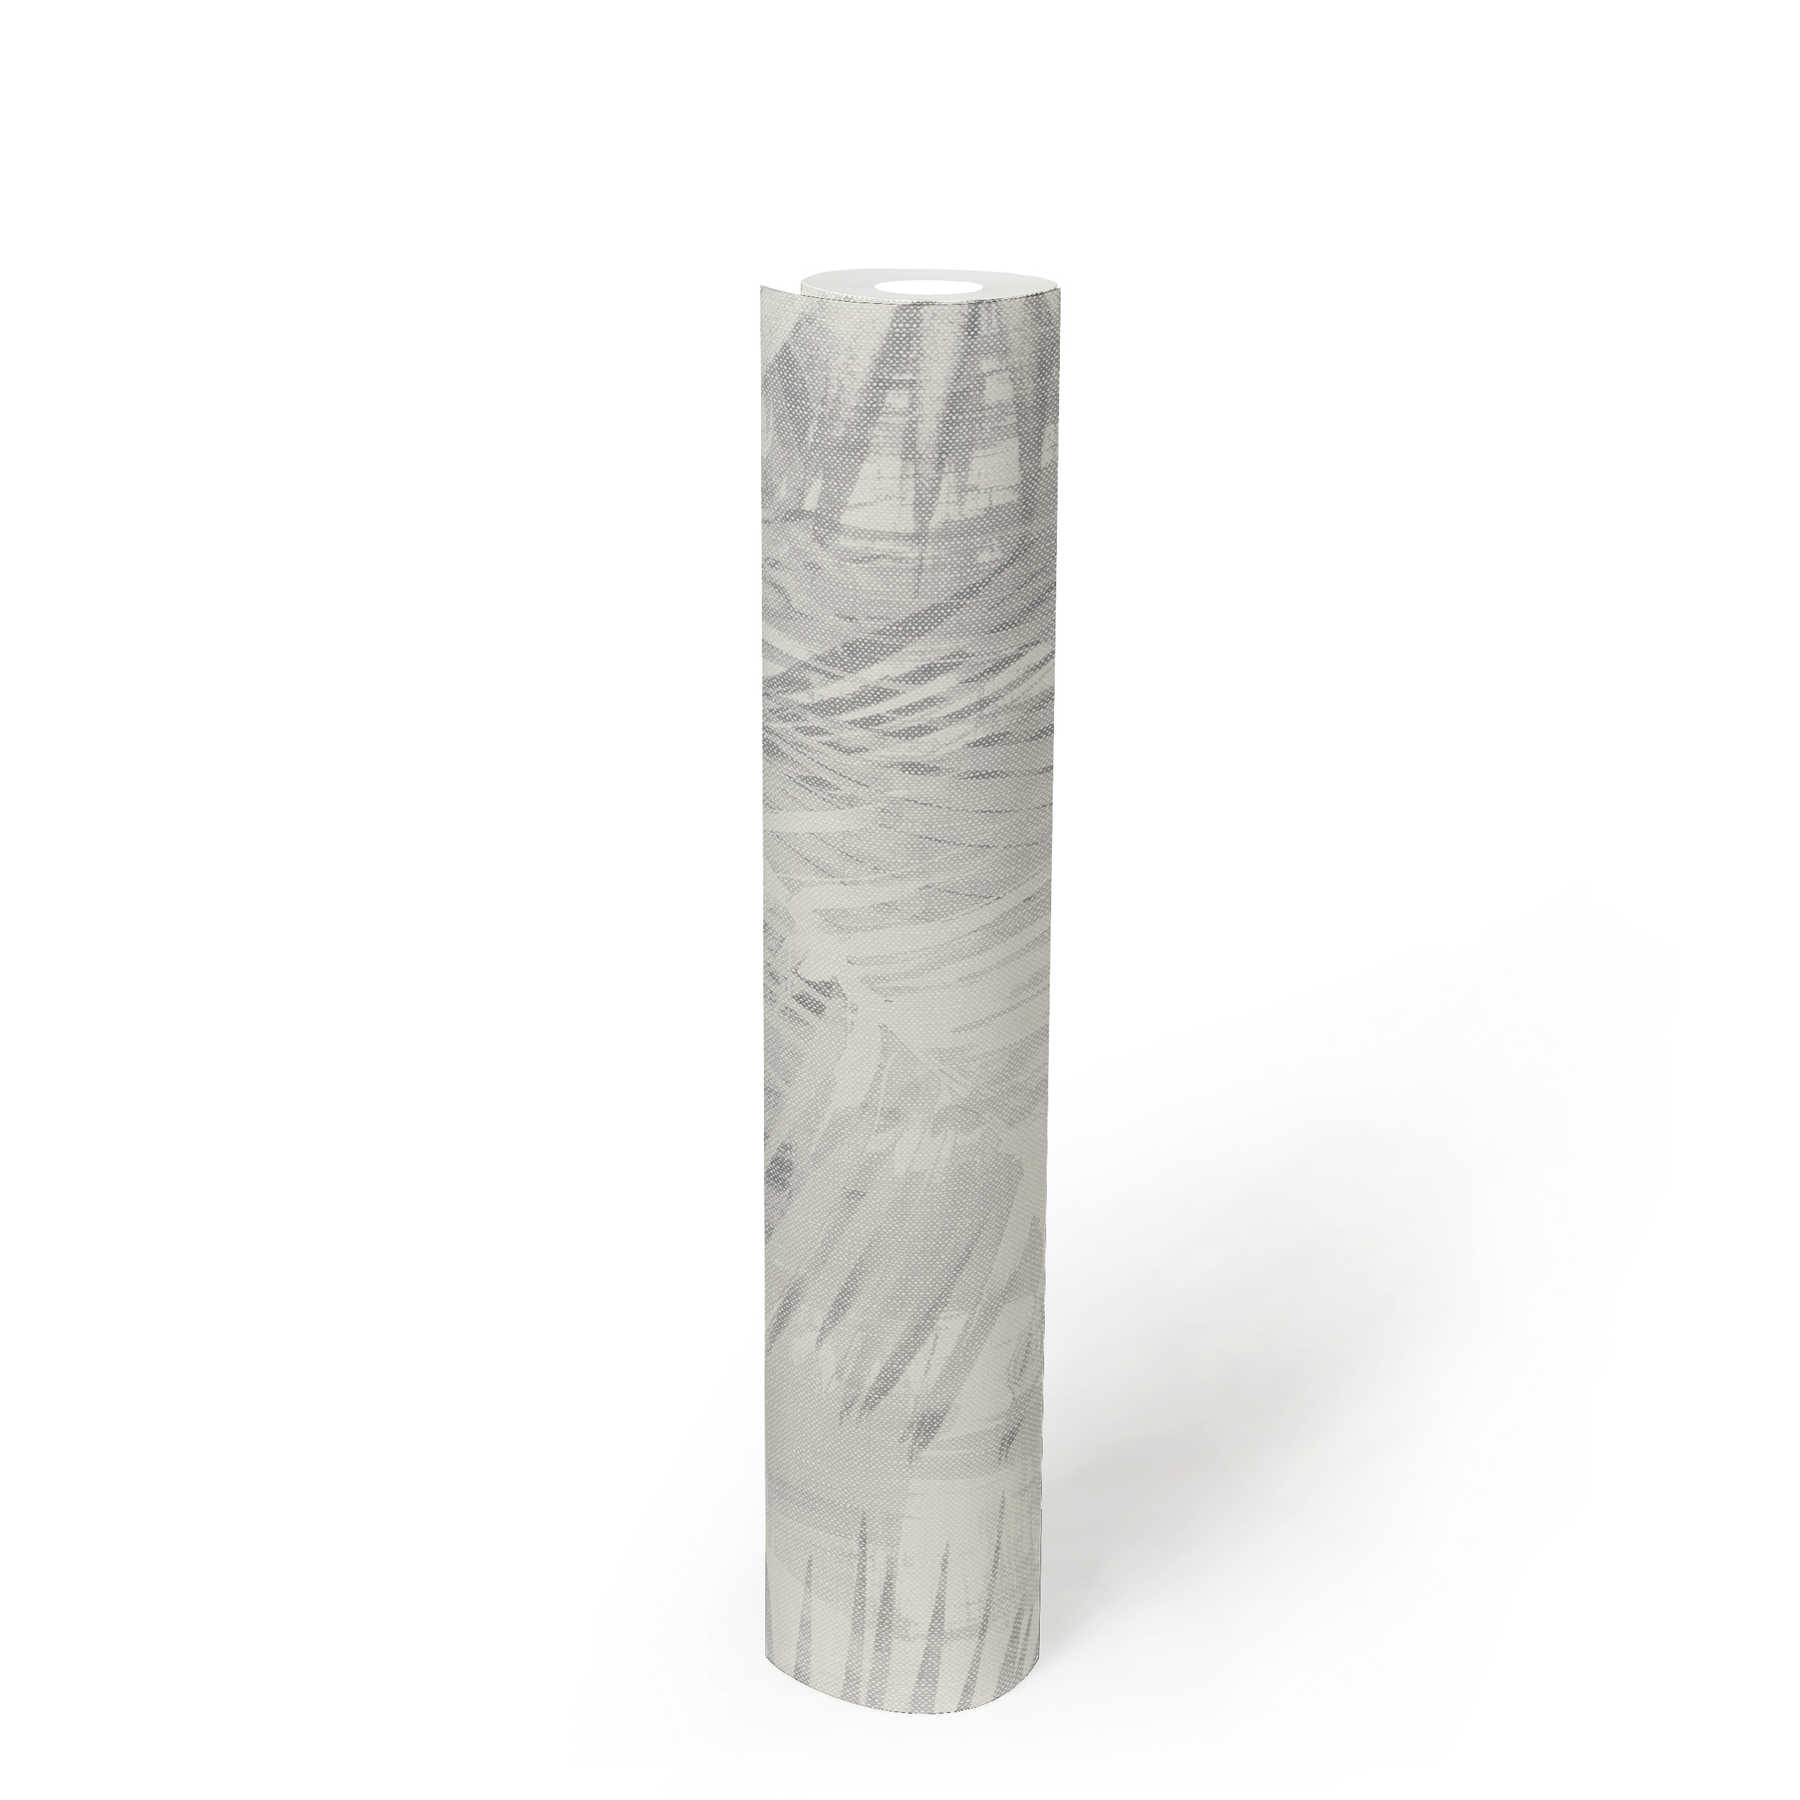             Blätter Tapete stilisiertes Design im Hygge Look – Grau
        